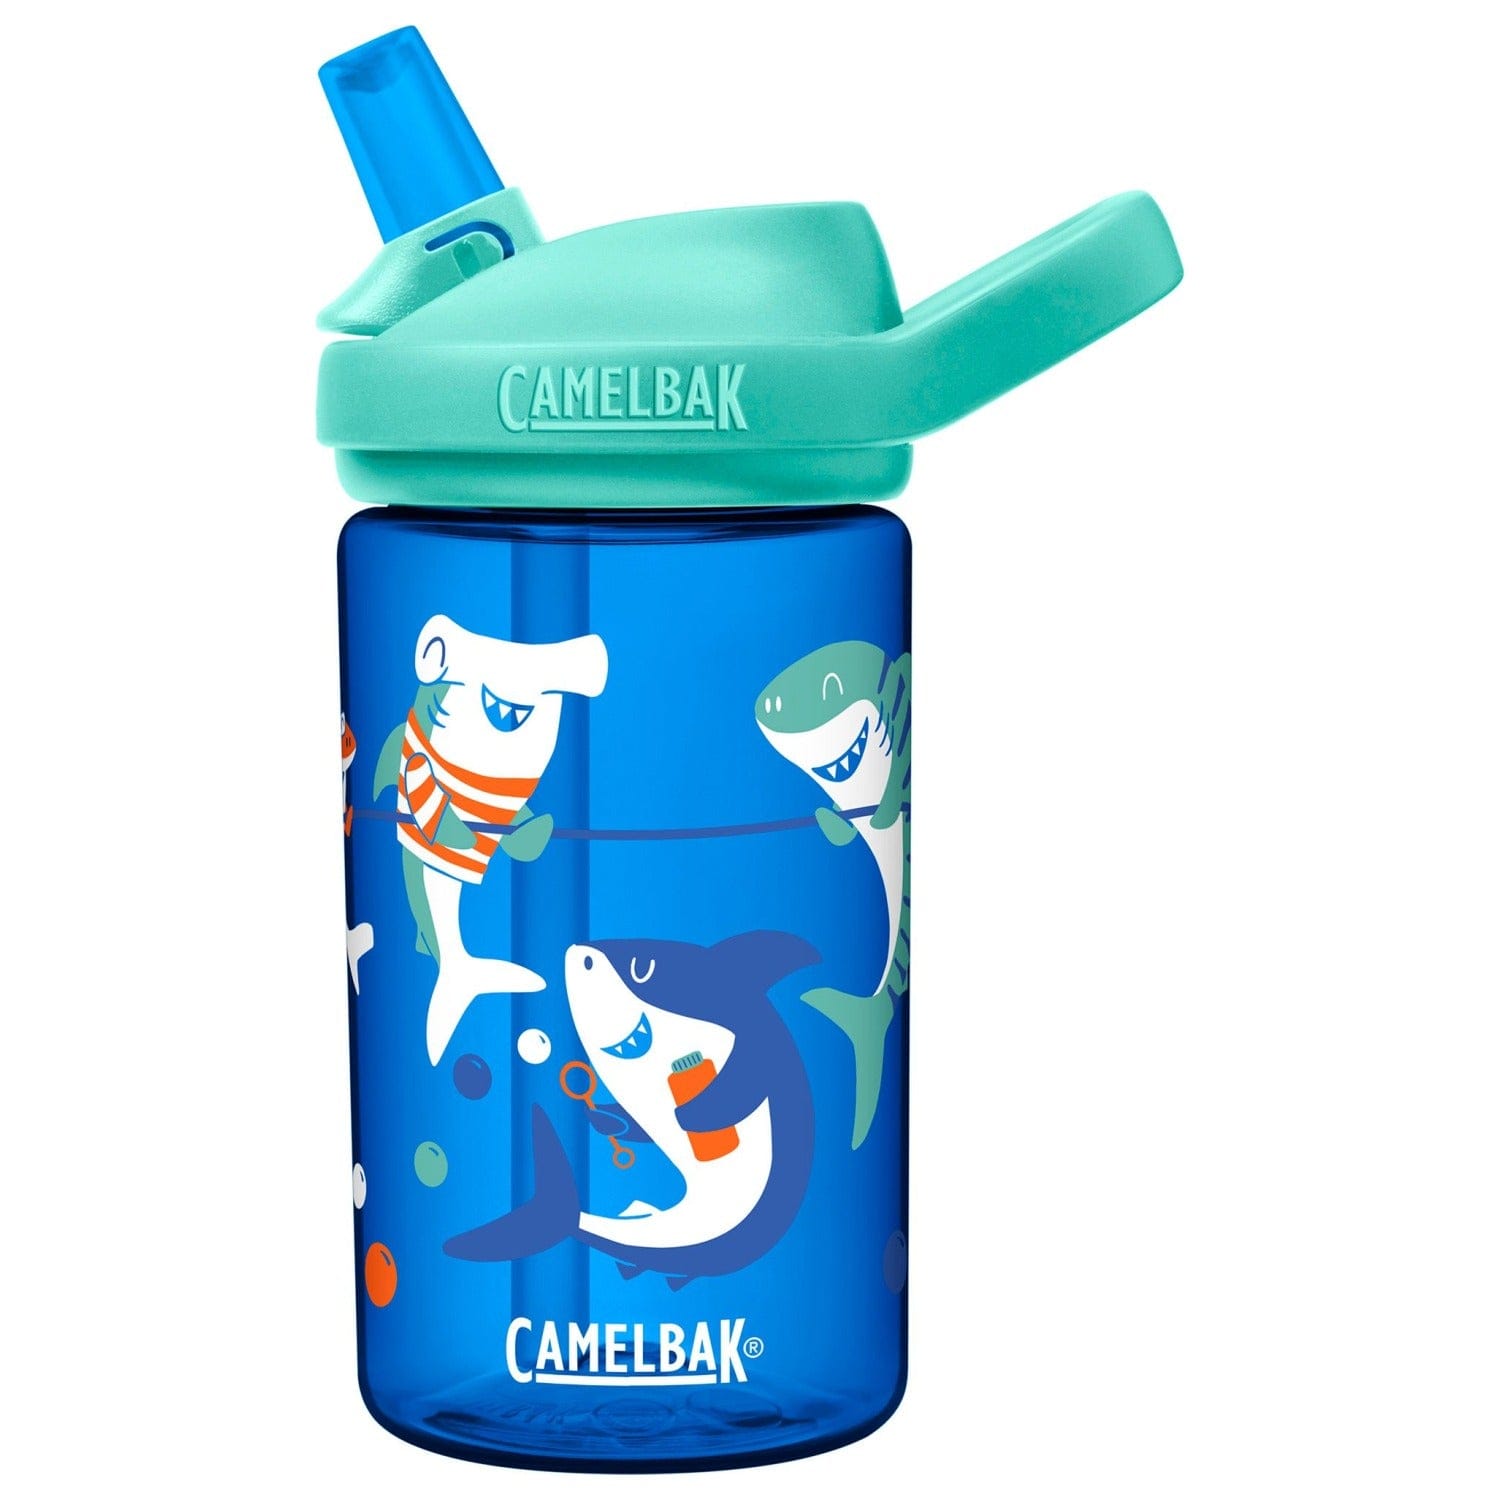 Camelbak Feeding Shark Summer Camp Camelbak Eddy+ Kids 400ml Drink Bottle